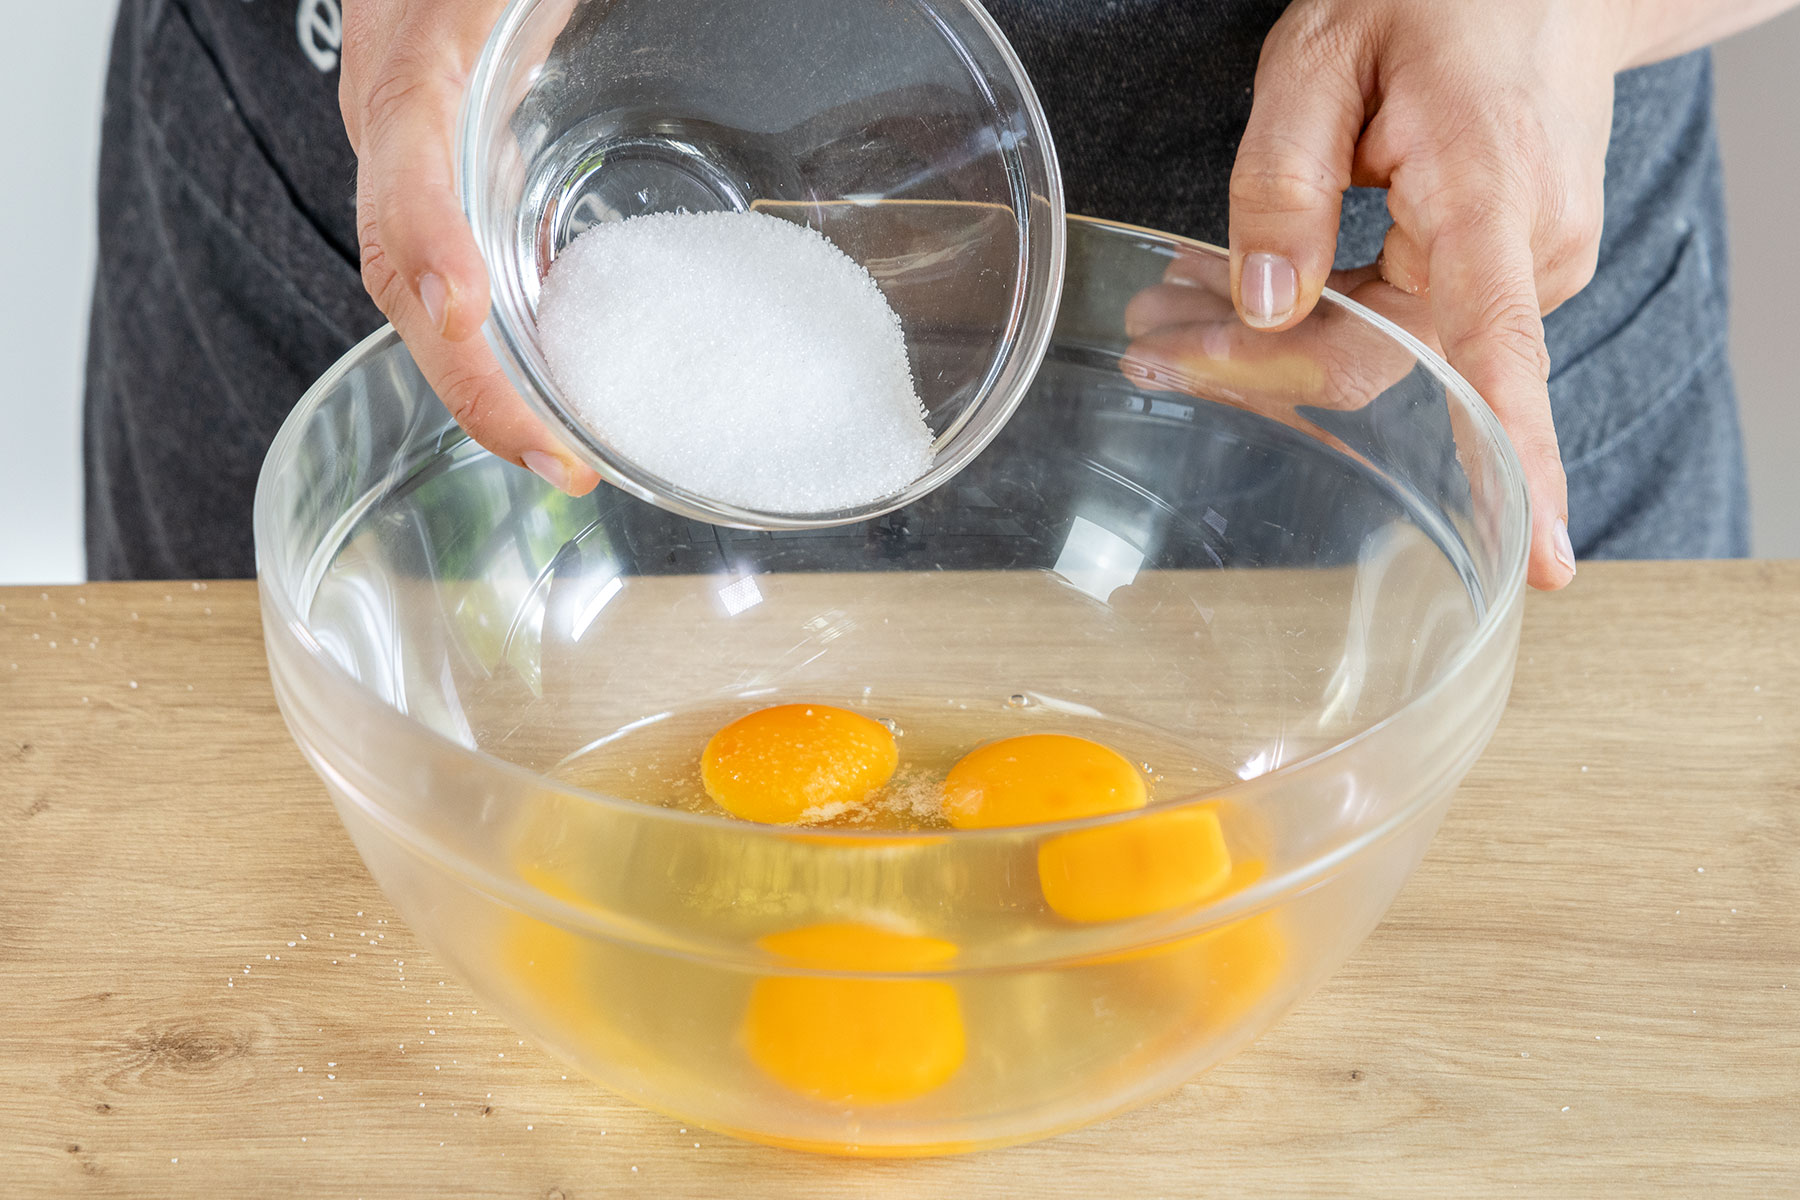 Zucker und Salz zu den Eiern geben